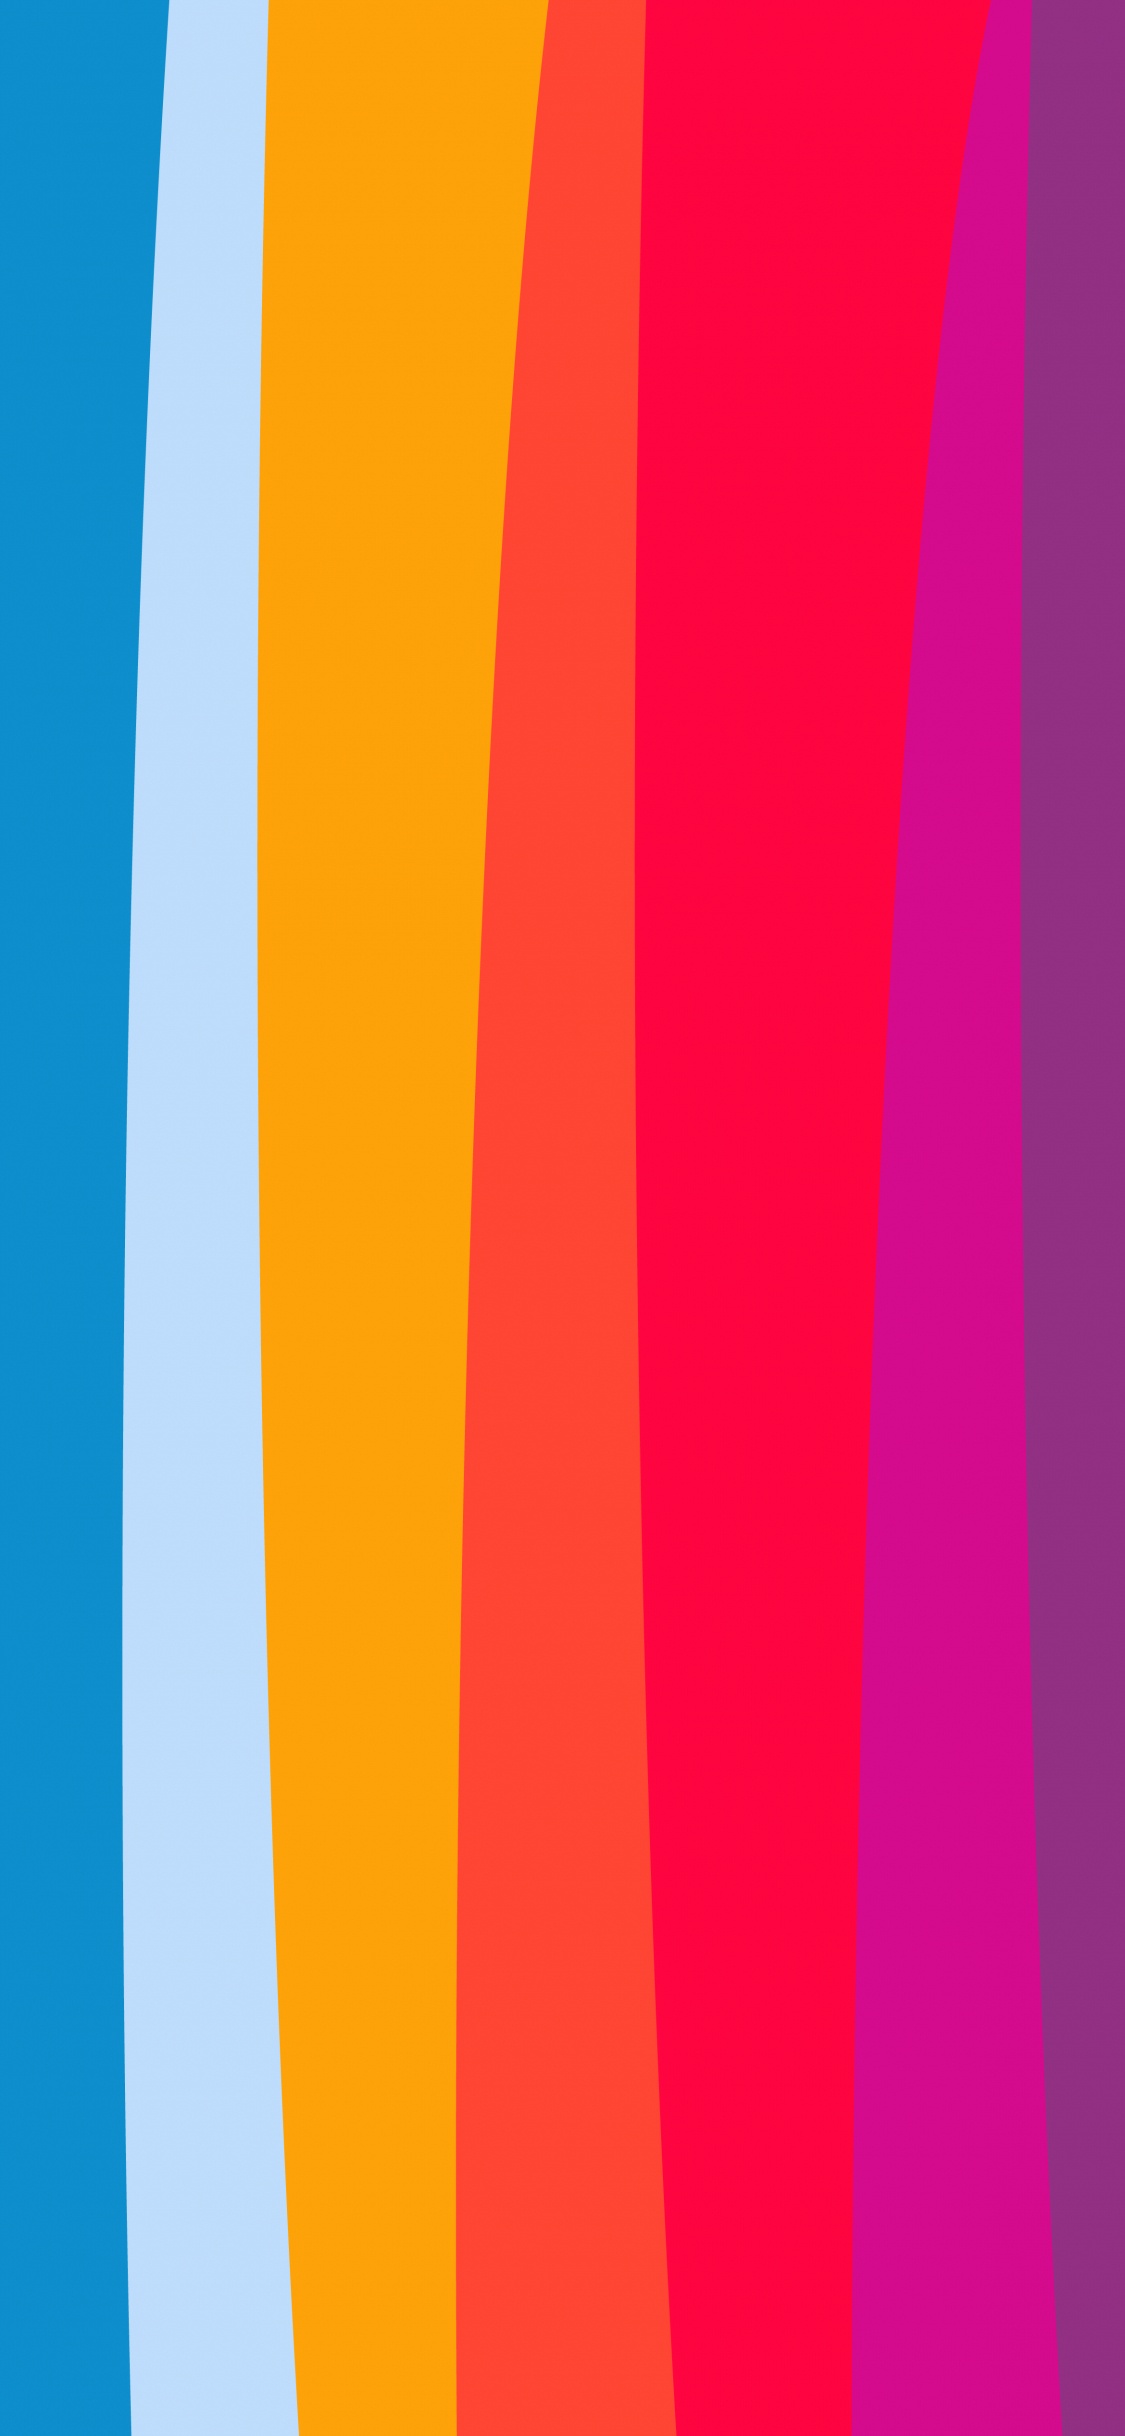 Orange, Äpfeln, Farbigkeit, Blau, Purpur. Wallpaper in 1125x2436 Resolution